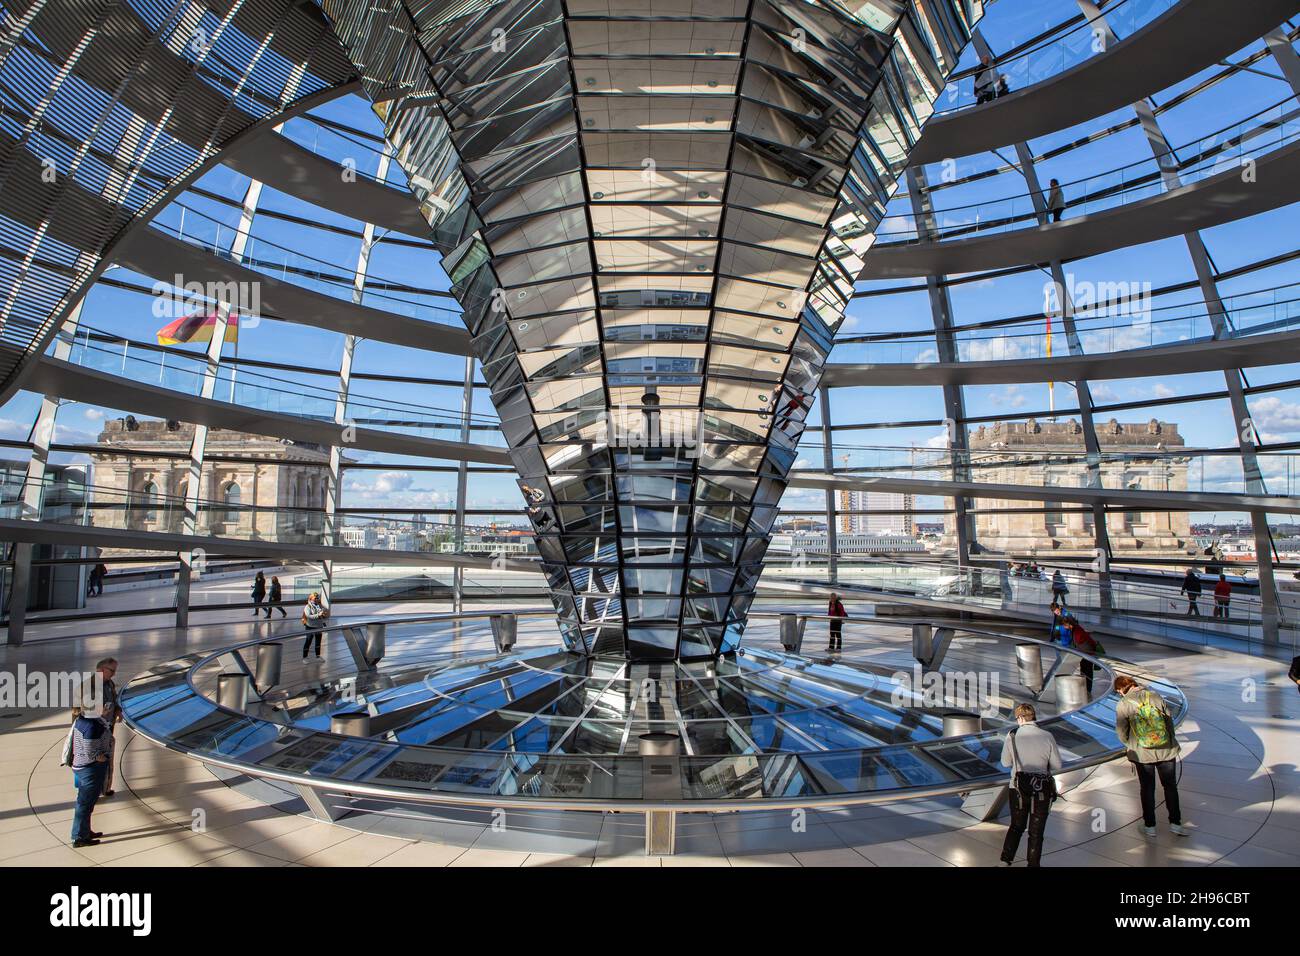 Le dôme du Reichstag sur le toit du Bundestag allemand à Berlin Mitte de l'intérieur.Architecture moderne en aluminium, verre et miroirs. Banque D'Images